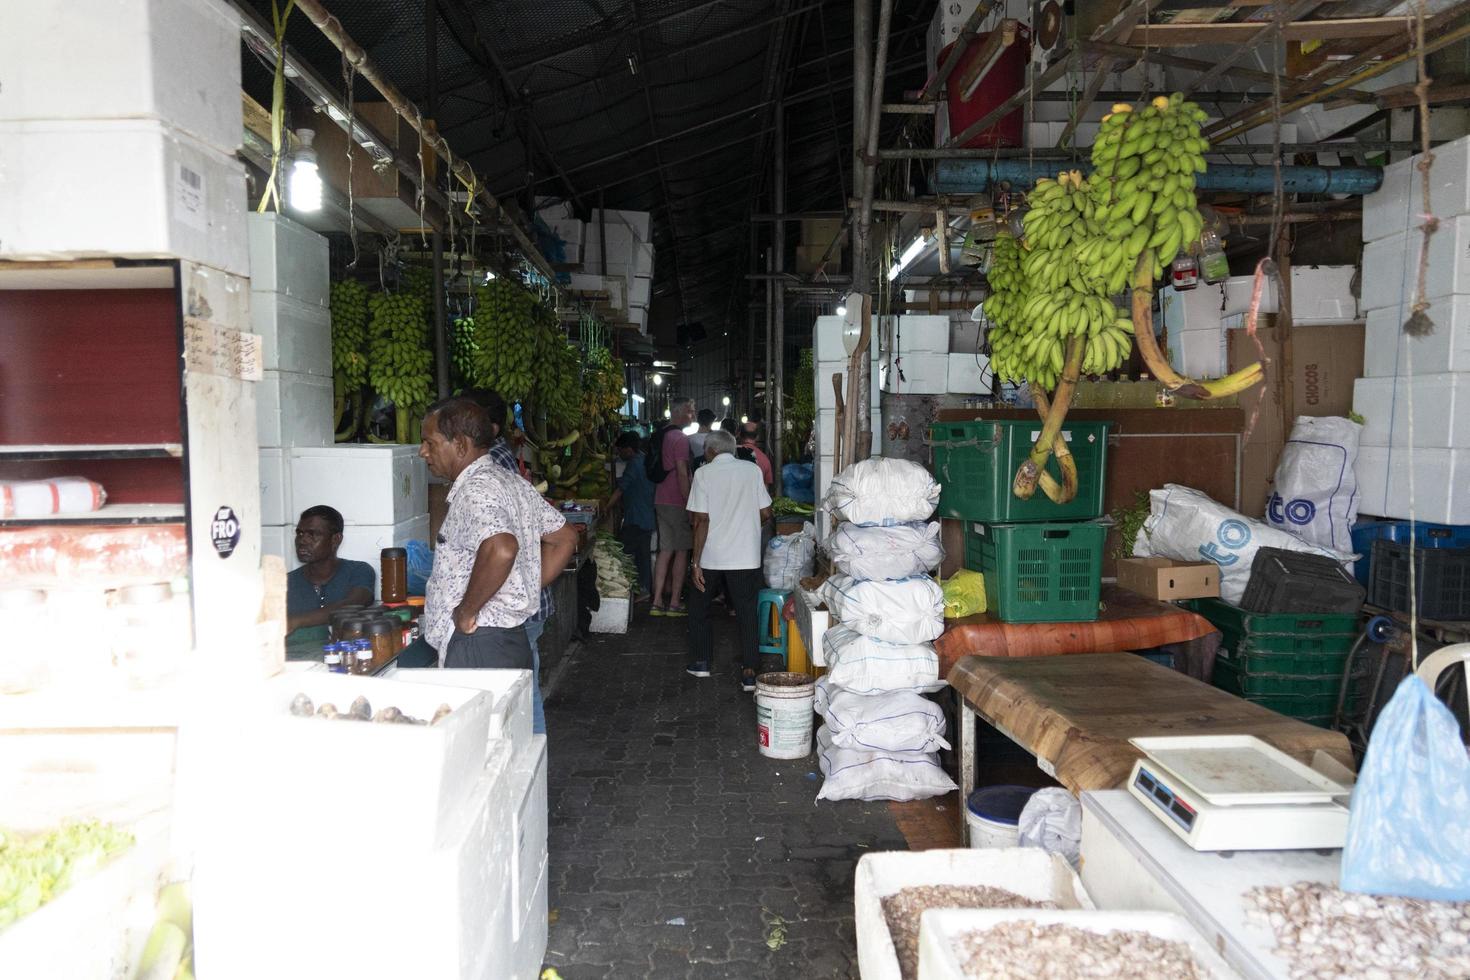 macho, maldivas - 23 de febrero de 2019 - gente comprando en el mercado de frutas y verduras foto